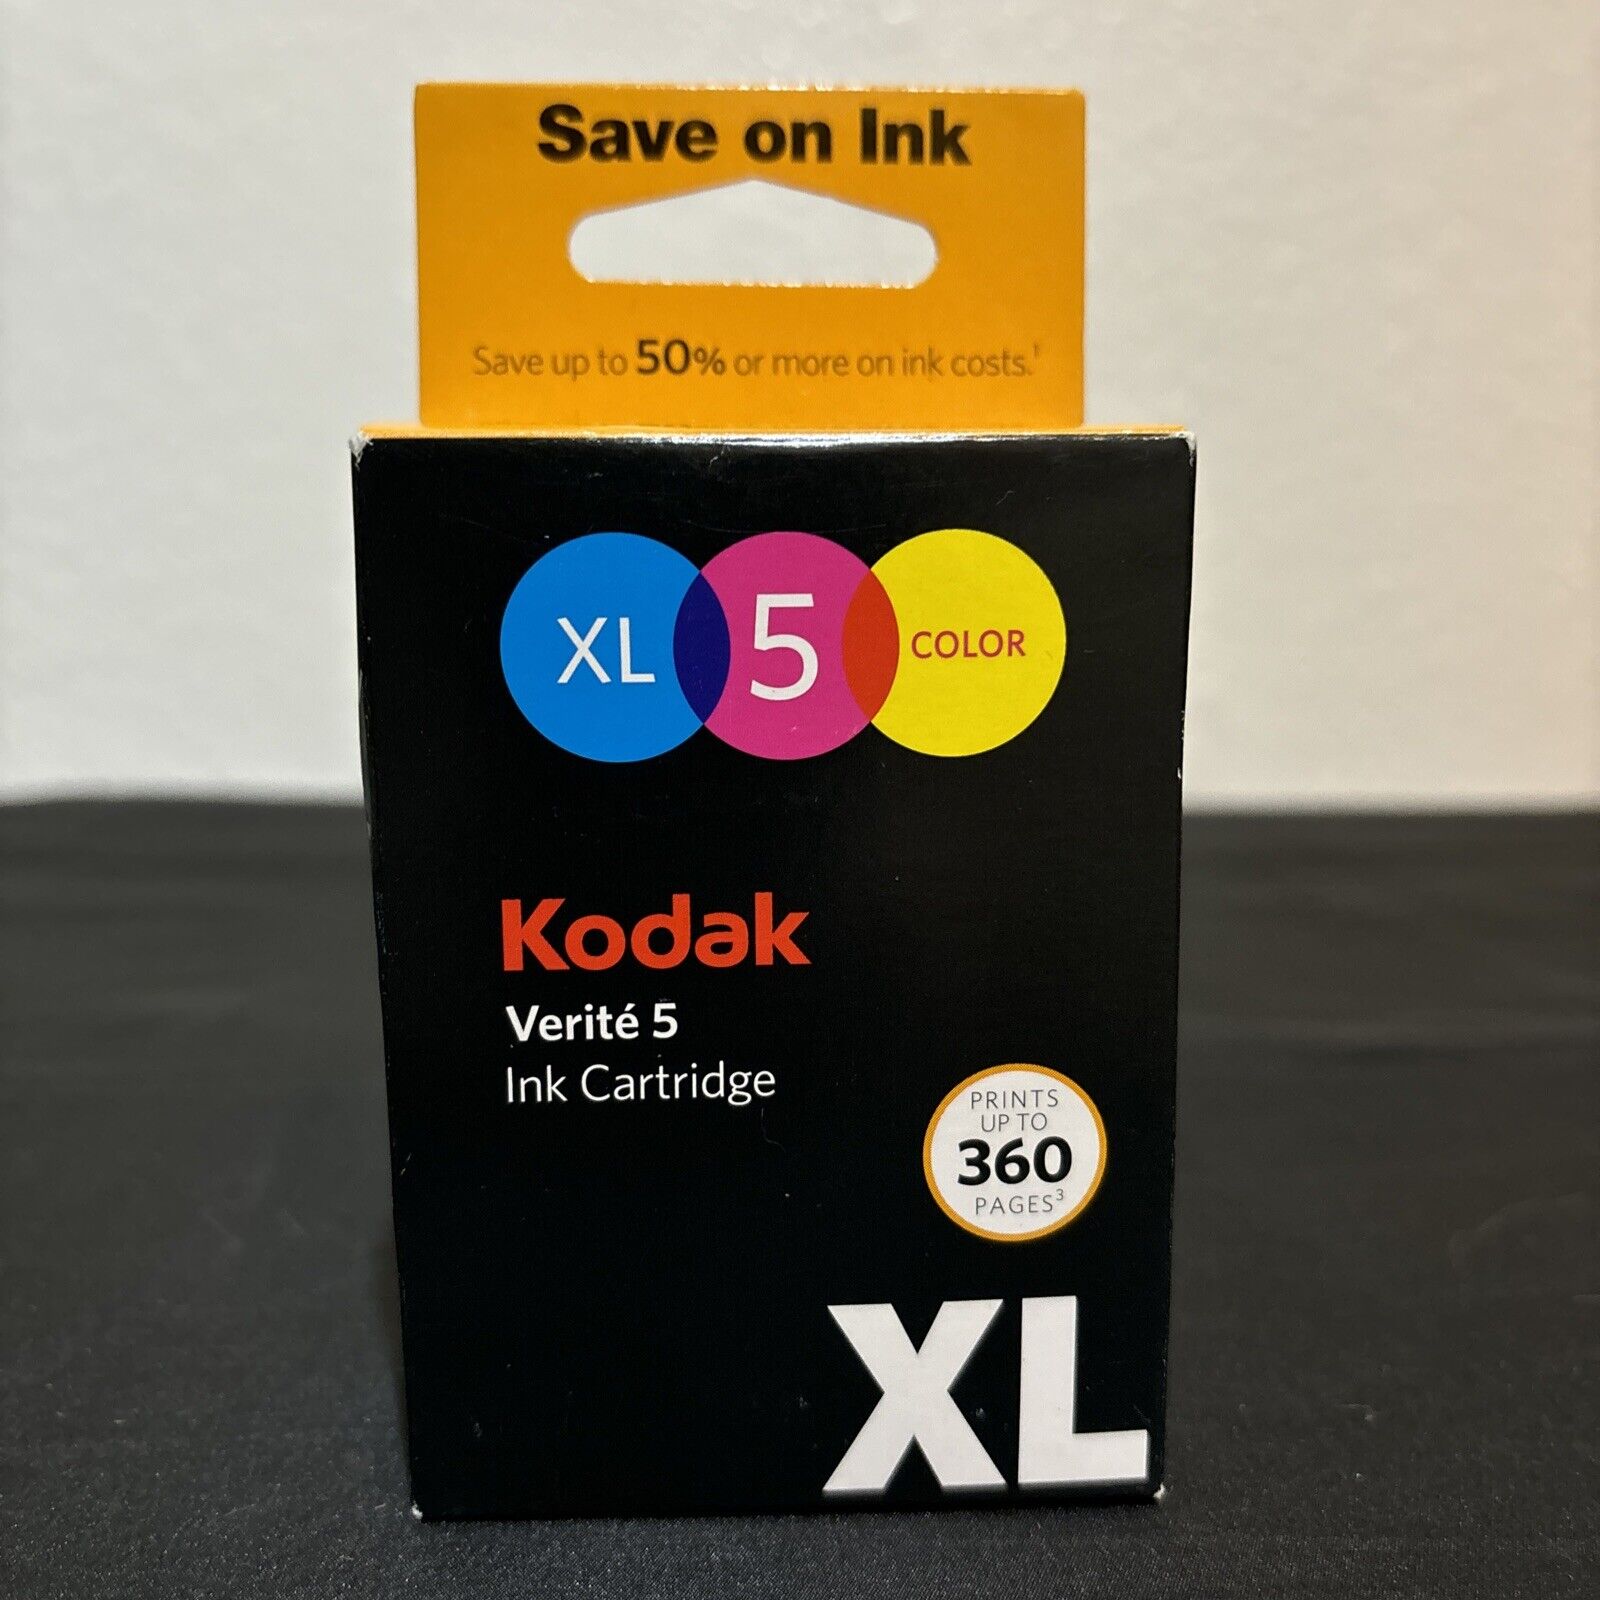 Kodak ALT1UA Verite 5 XL Color Ink Jet Cartridge - Multi-colored NEW